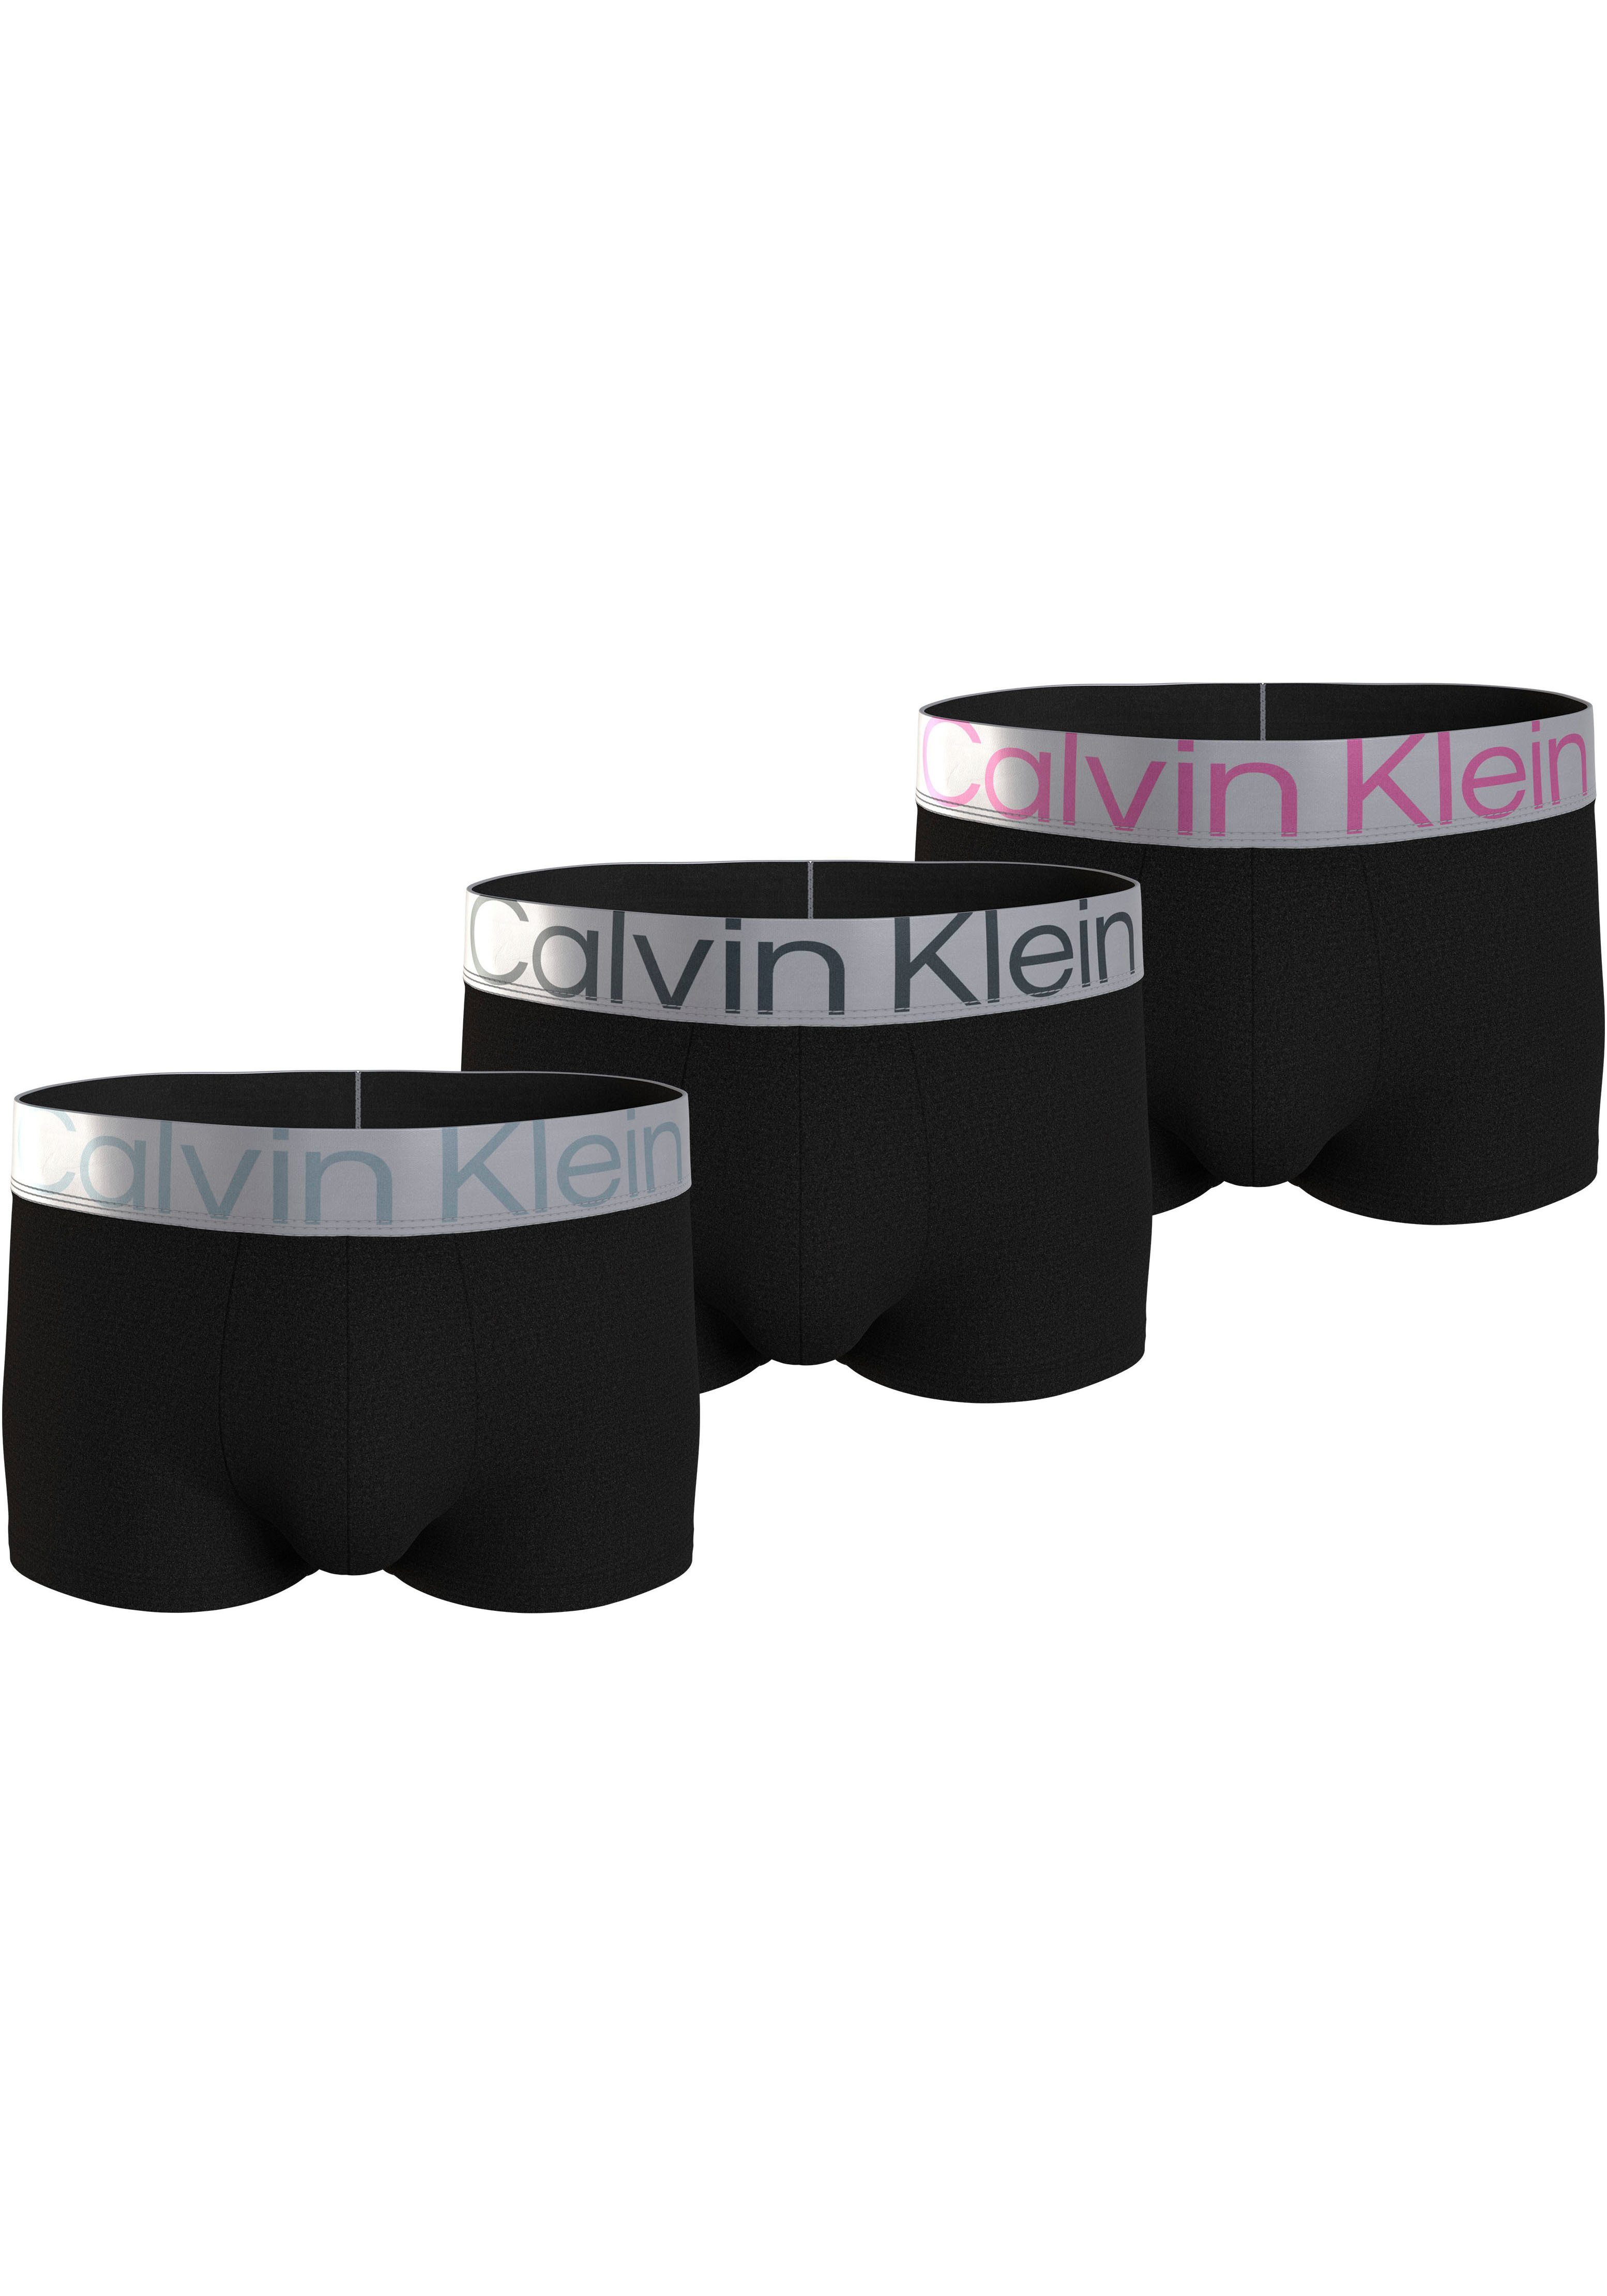 Calvin Klein Trunk LOW RISE TRUNK 3PK met elastische logo-band (3 stuks Set van 3)